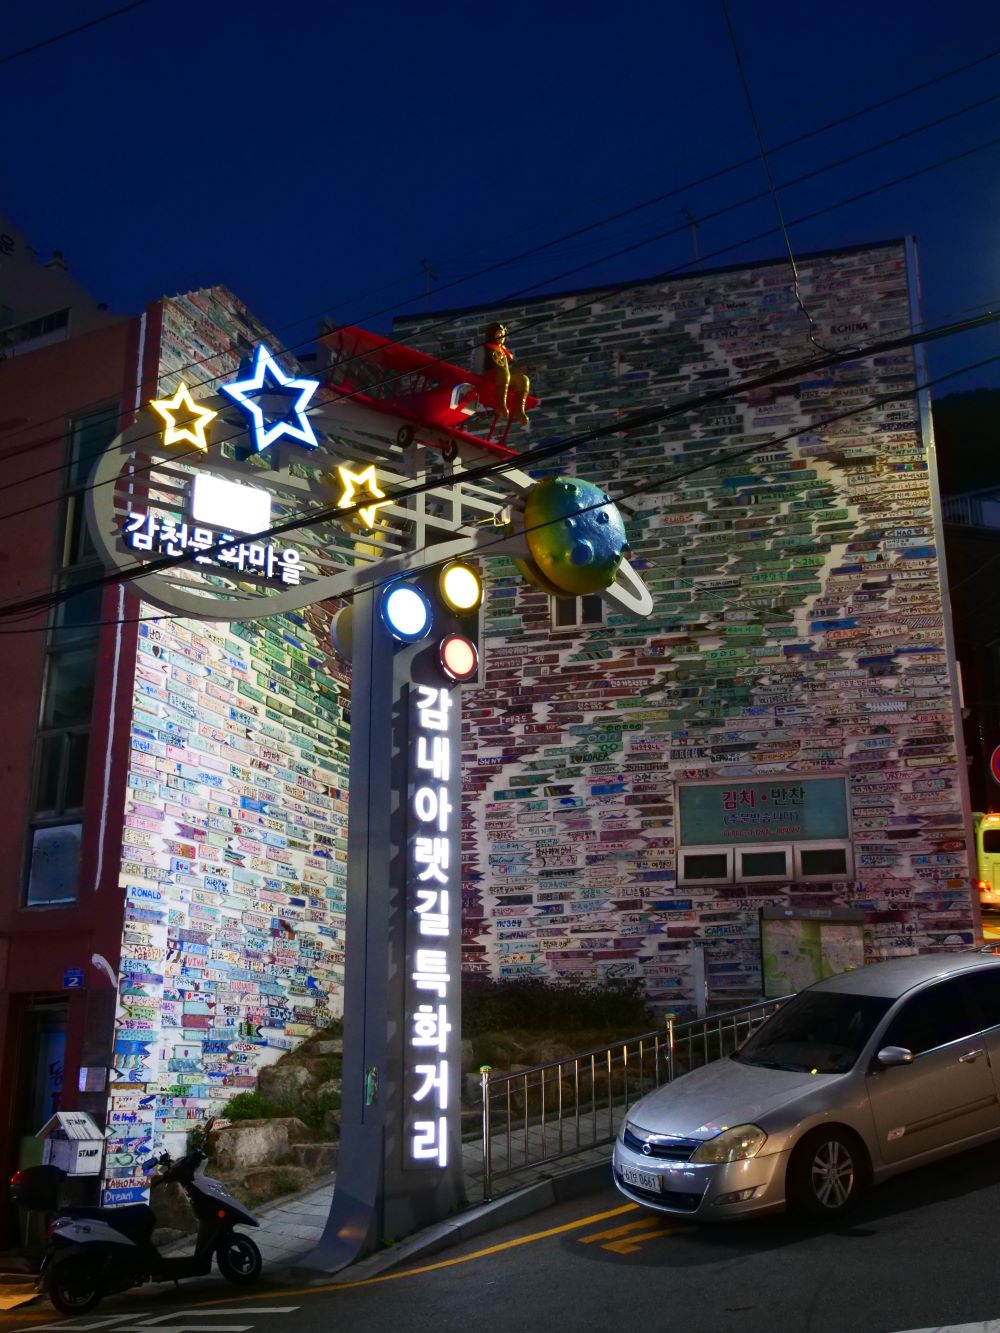 A kultúrfalu körüli út vége egy 2016 deszkahalból álló installáció ’Message of Hope’ címmel. Jin Yeongseop ‘reményfáját‘ ábrázoló tervét szintén a helyiek közreműködésével valósították meg. A halas tematika mellett itt búcsúzik a kis herceges téma is<br />